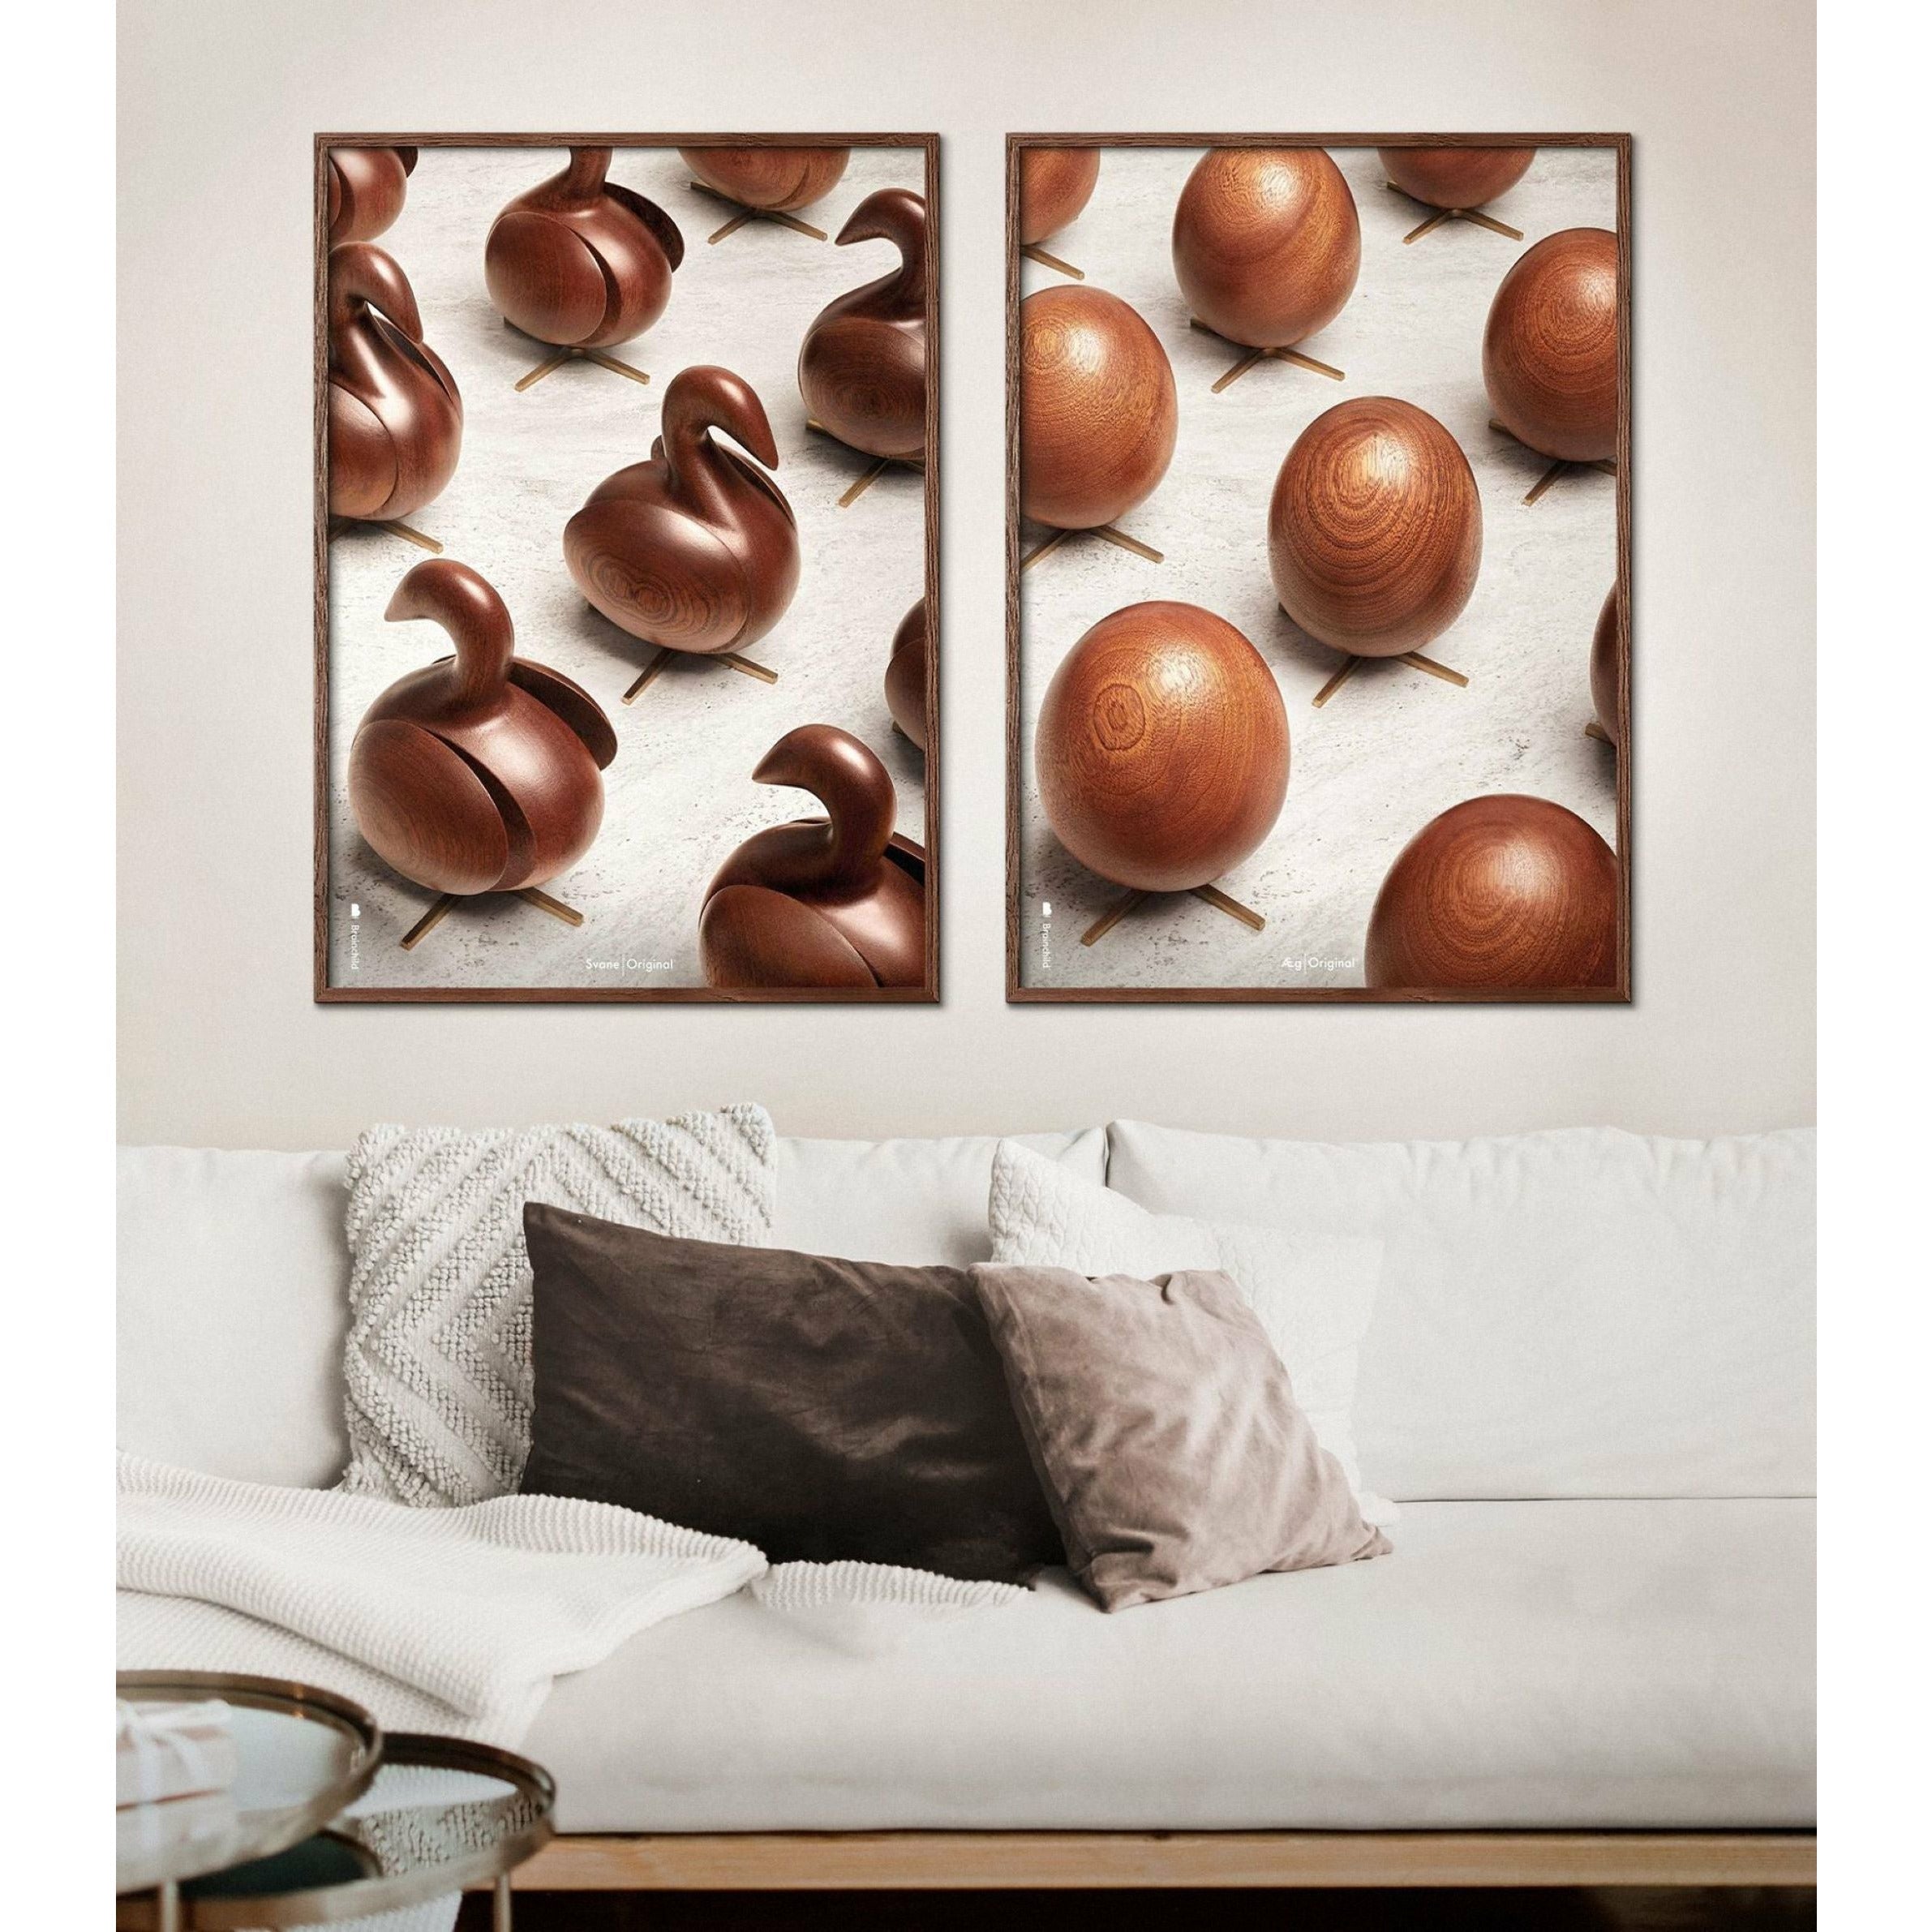 Póster de desfile de huevos de creación, marco hecho de madera clara, 50x70 cm